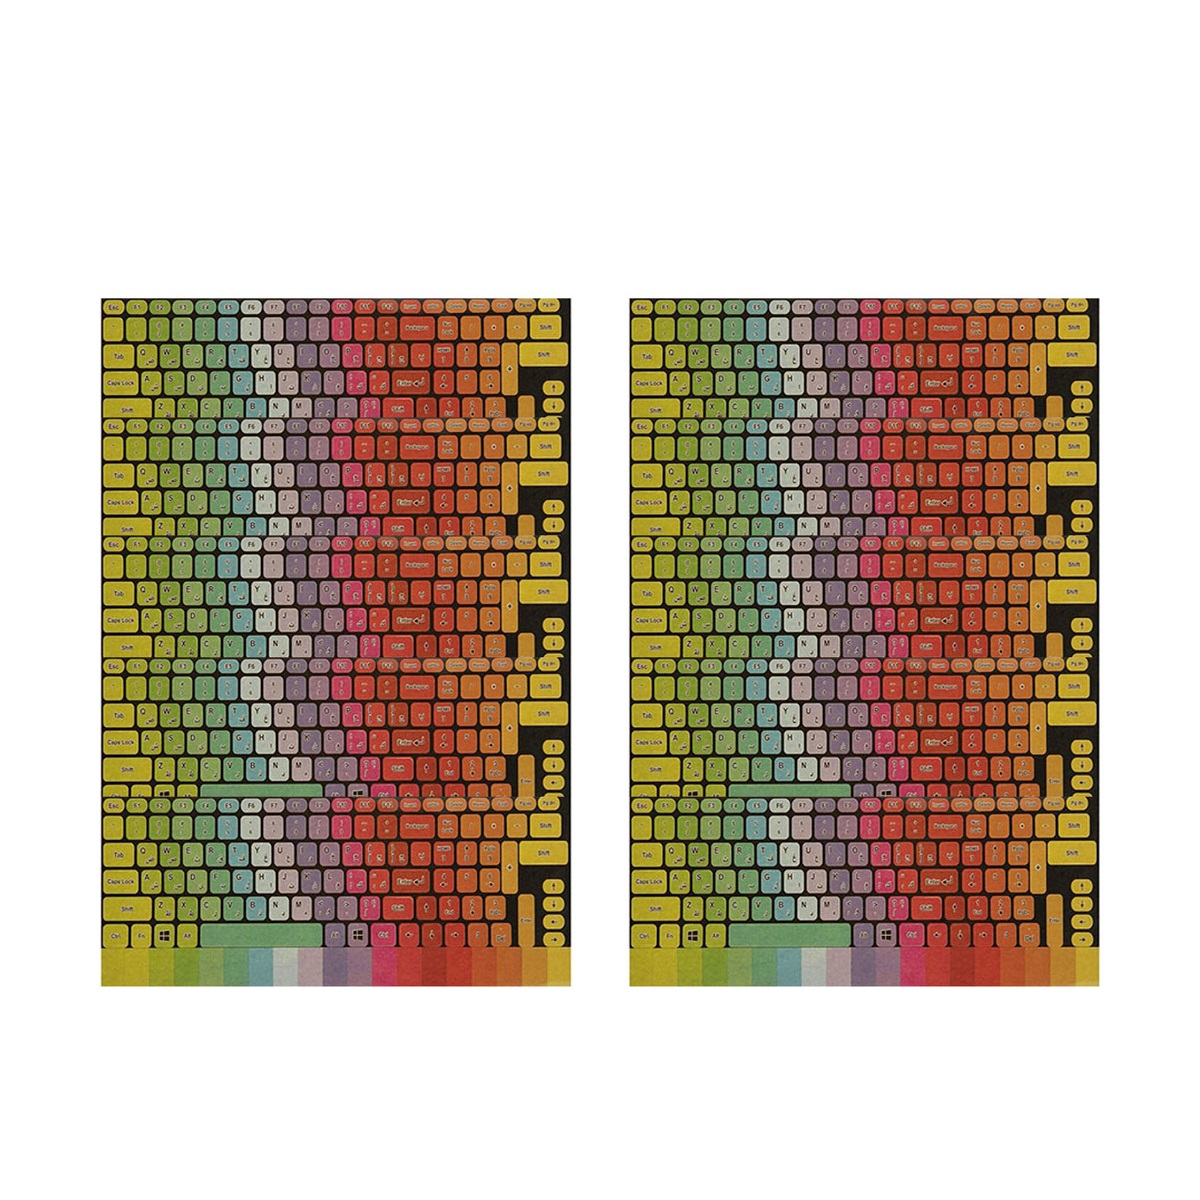 برچسب کیبورد طرح پالت کد 1 با حروف فارسی بسته 20 عددی